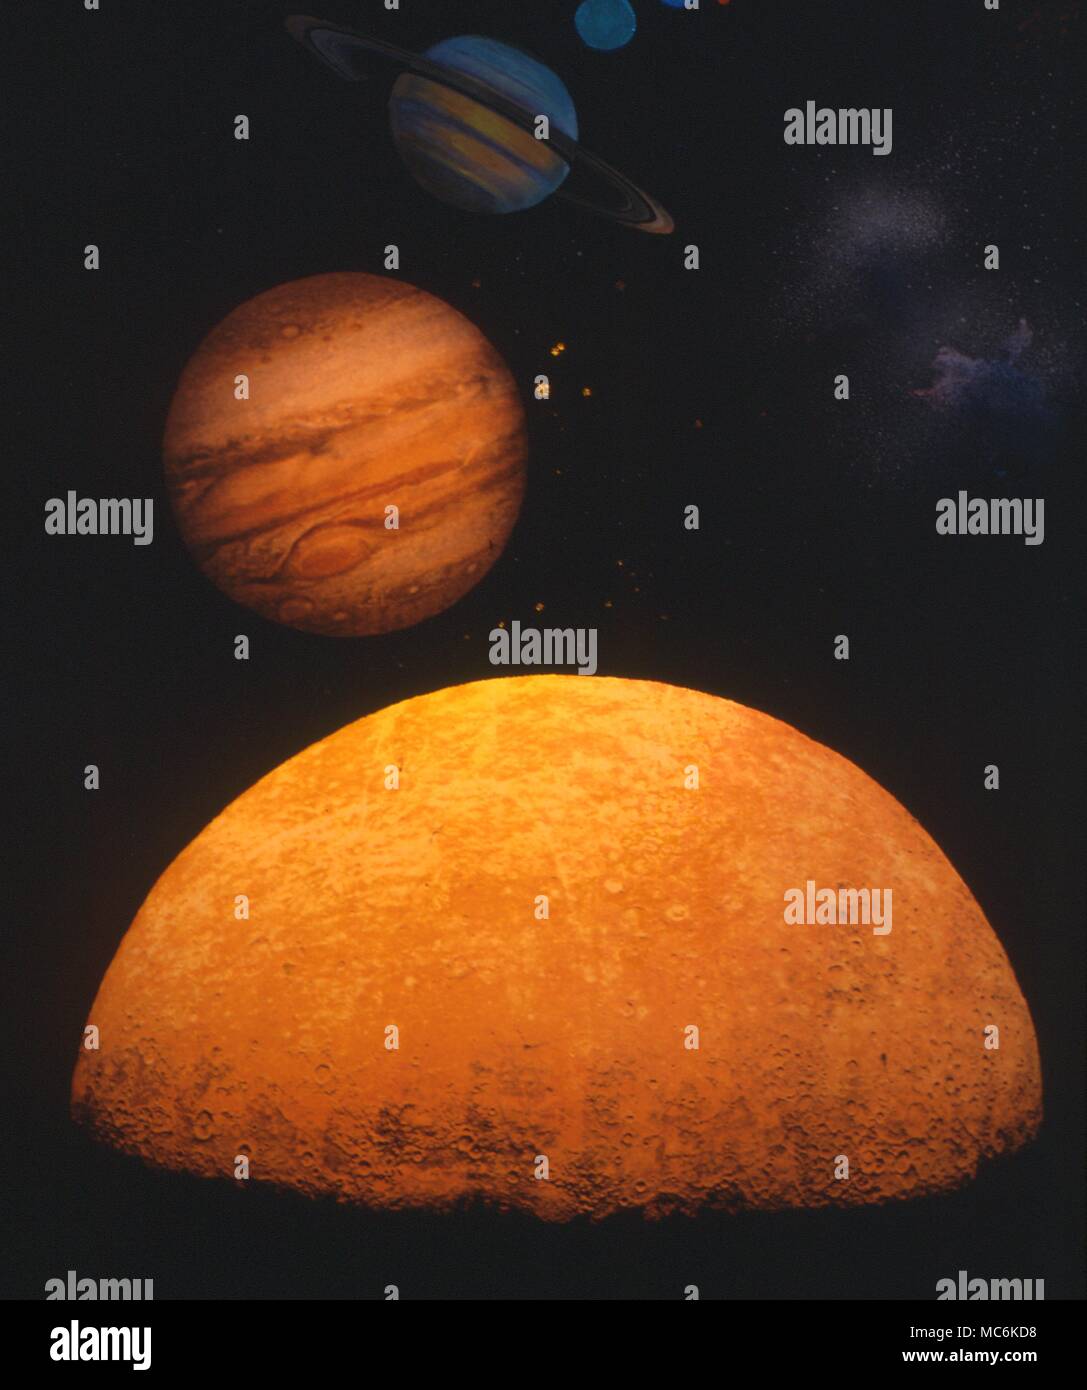 Los planetas Marte, Júpiter y Saturno ilustraciones retroiluminado Foto de stock